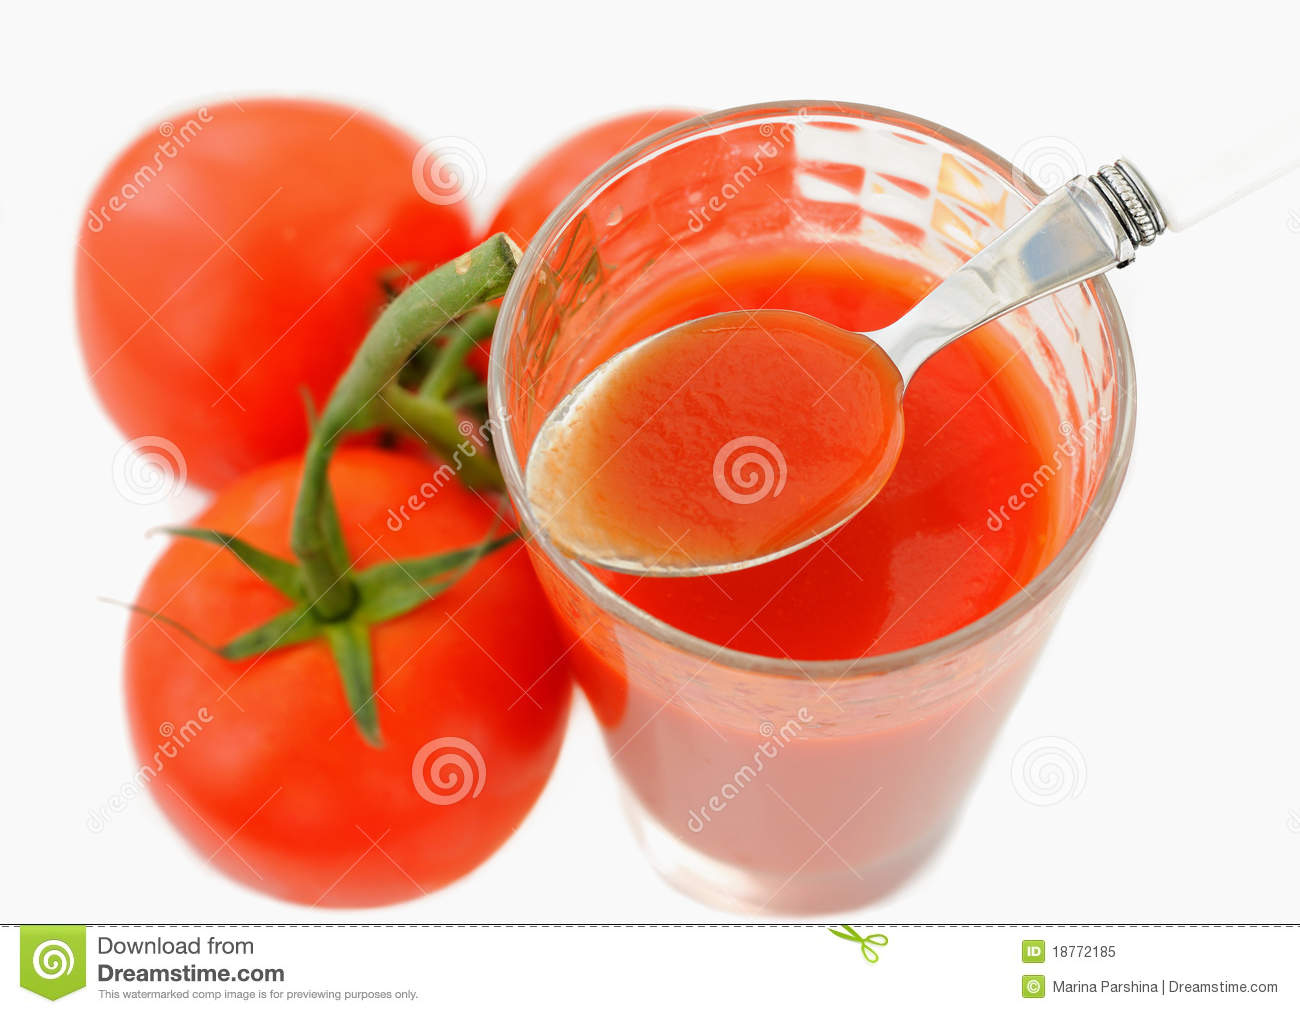 Tomato Juice Royalty Free Stock Photo   Image  18772185